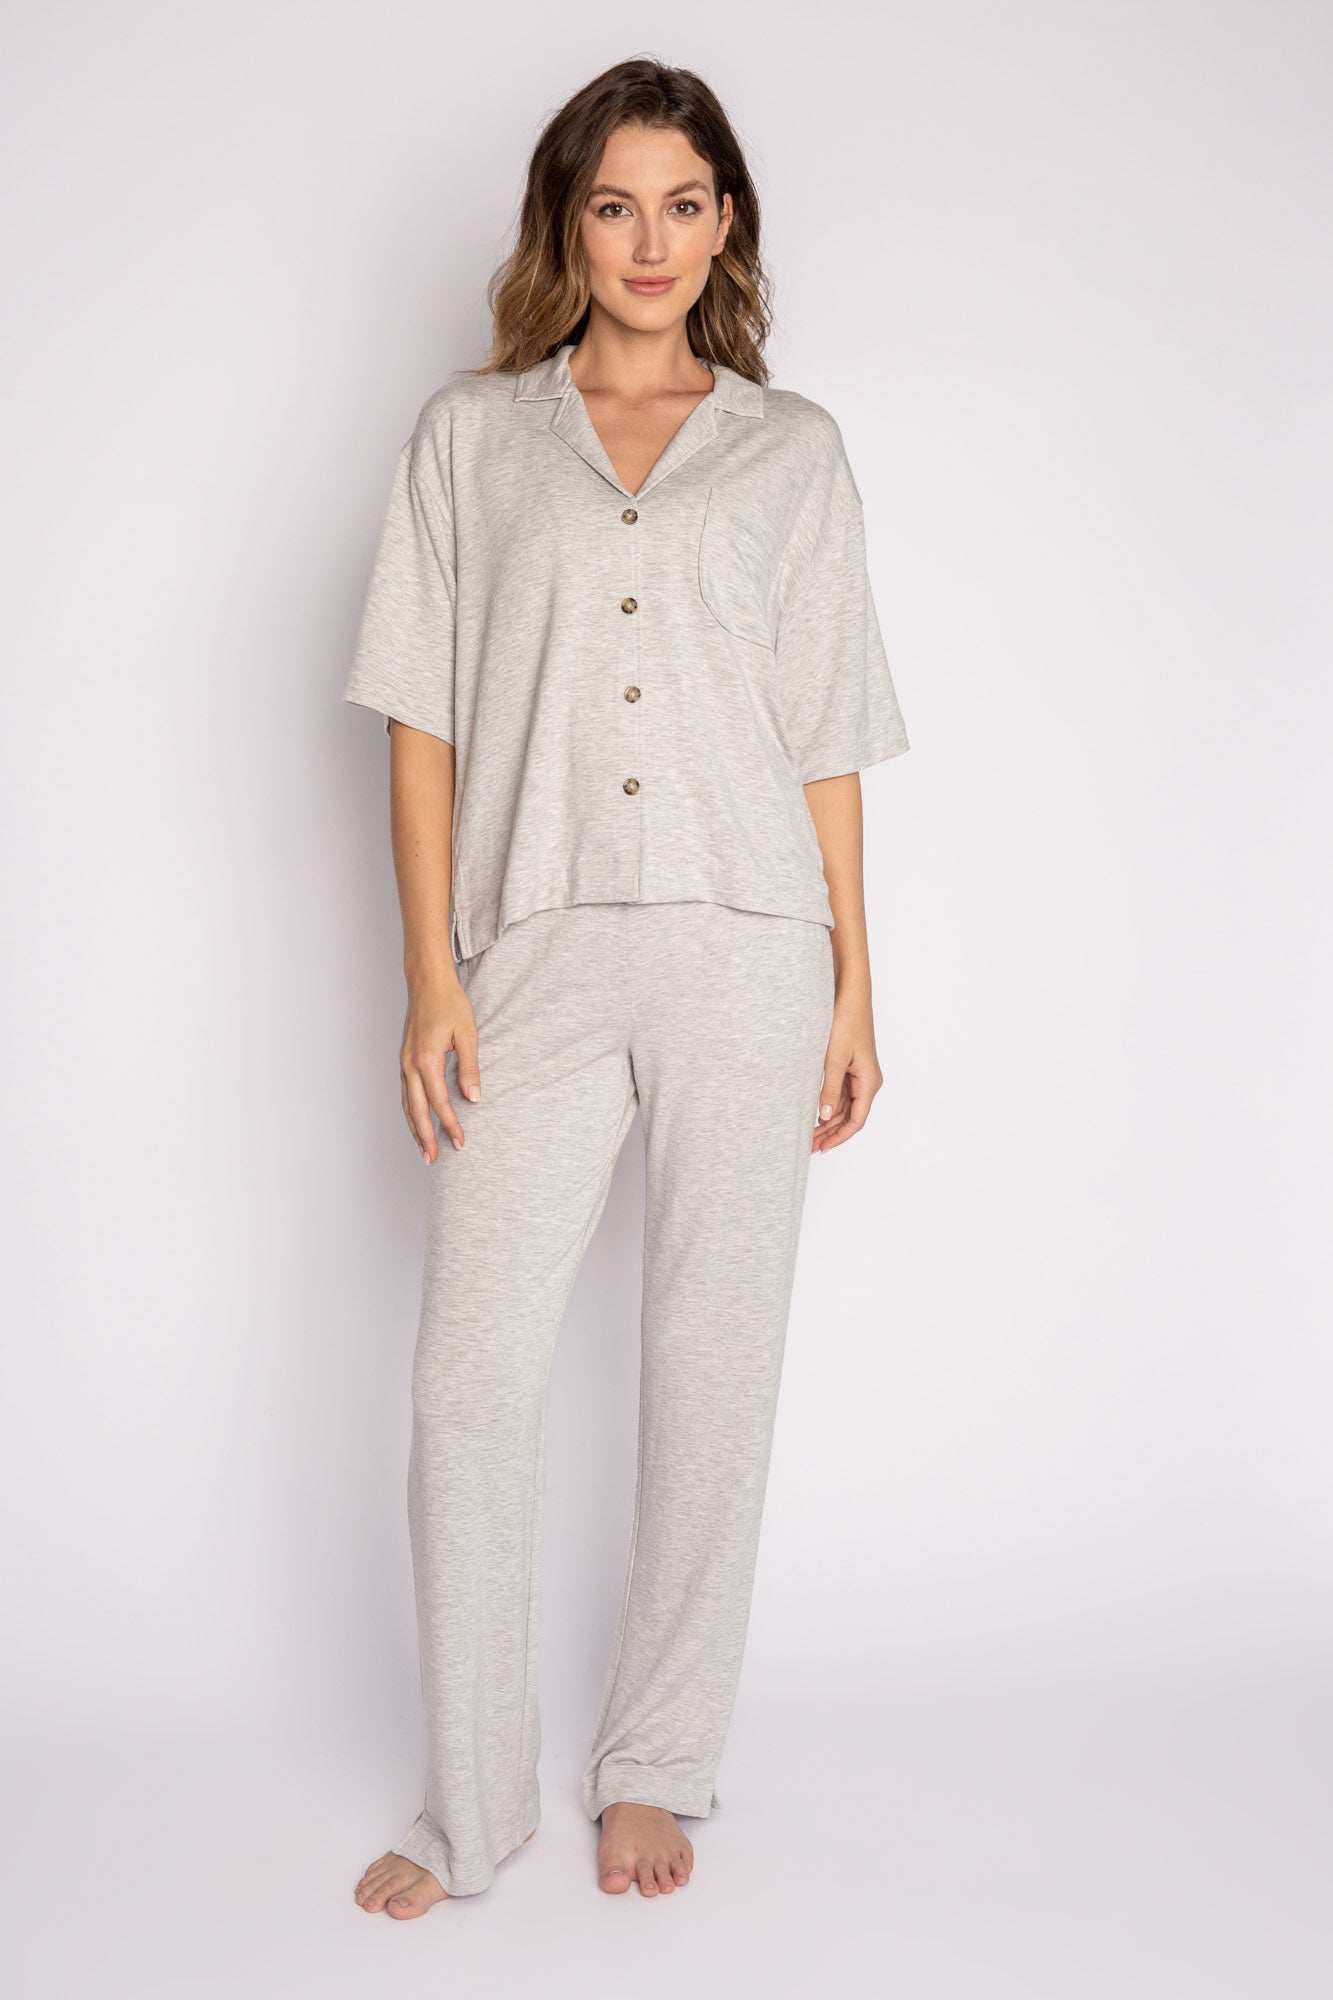 Women's Pajama Essentials Shirt& Pants Set Black – P.J. Salvage